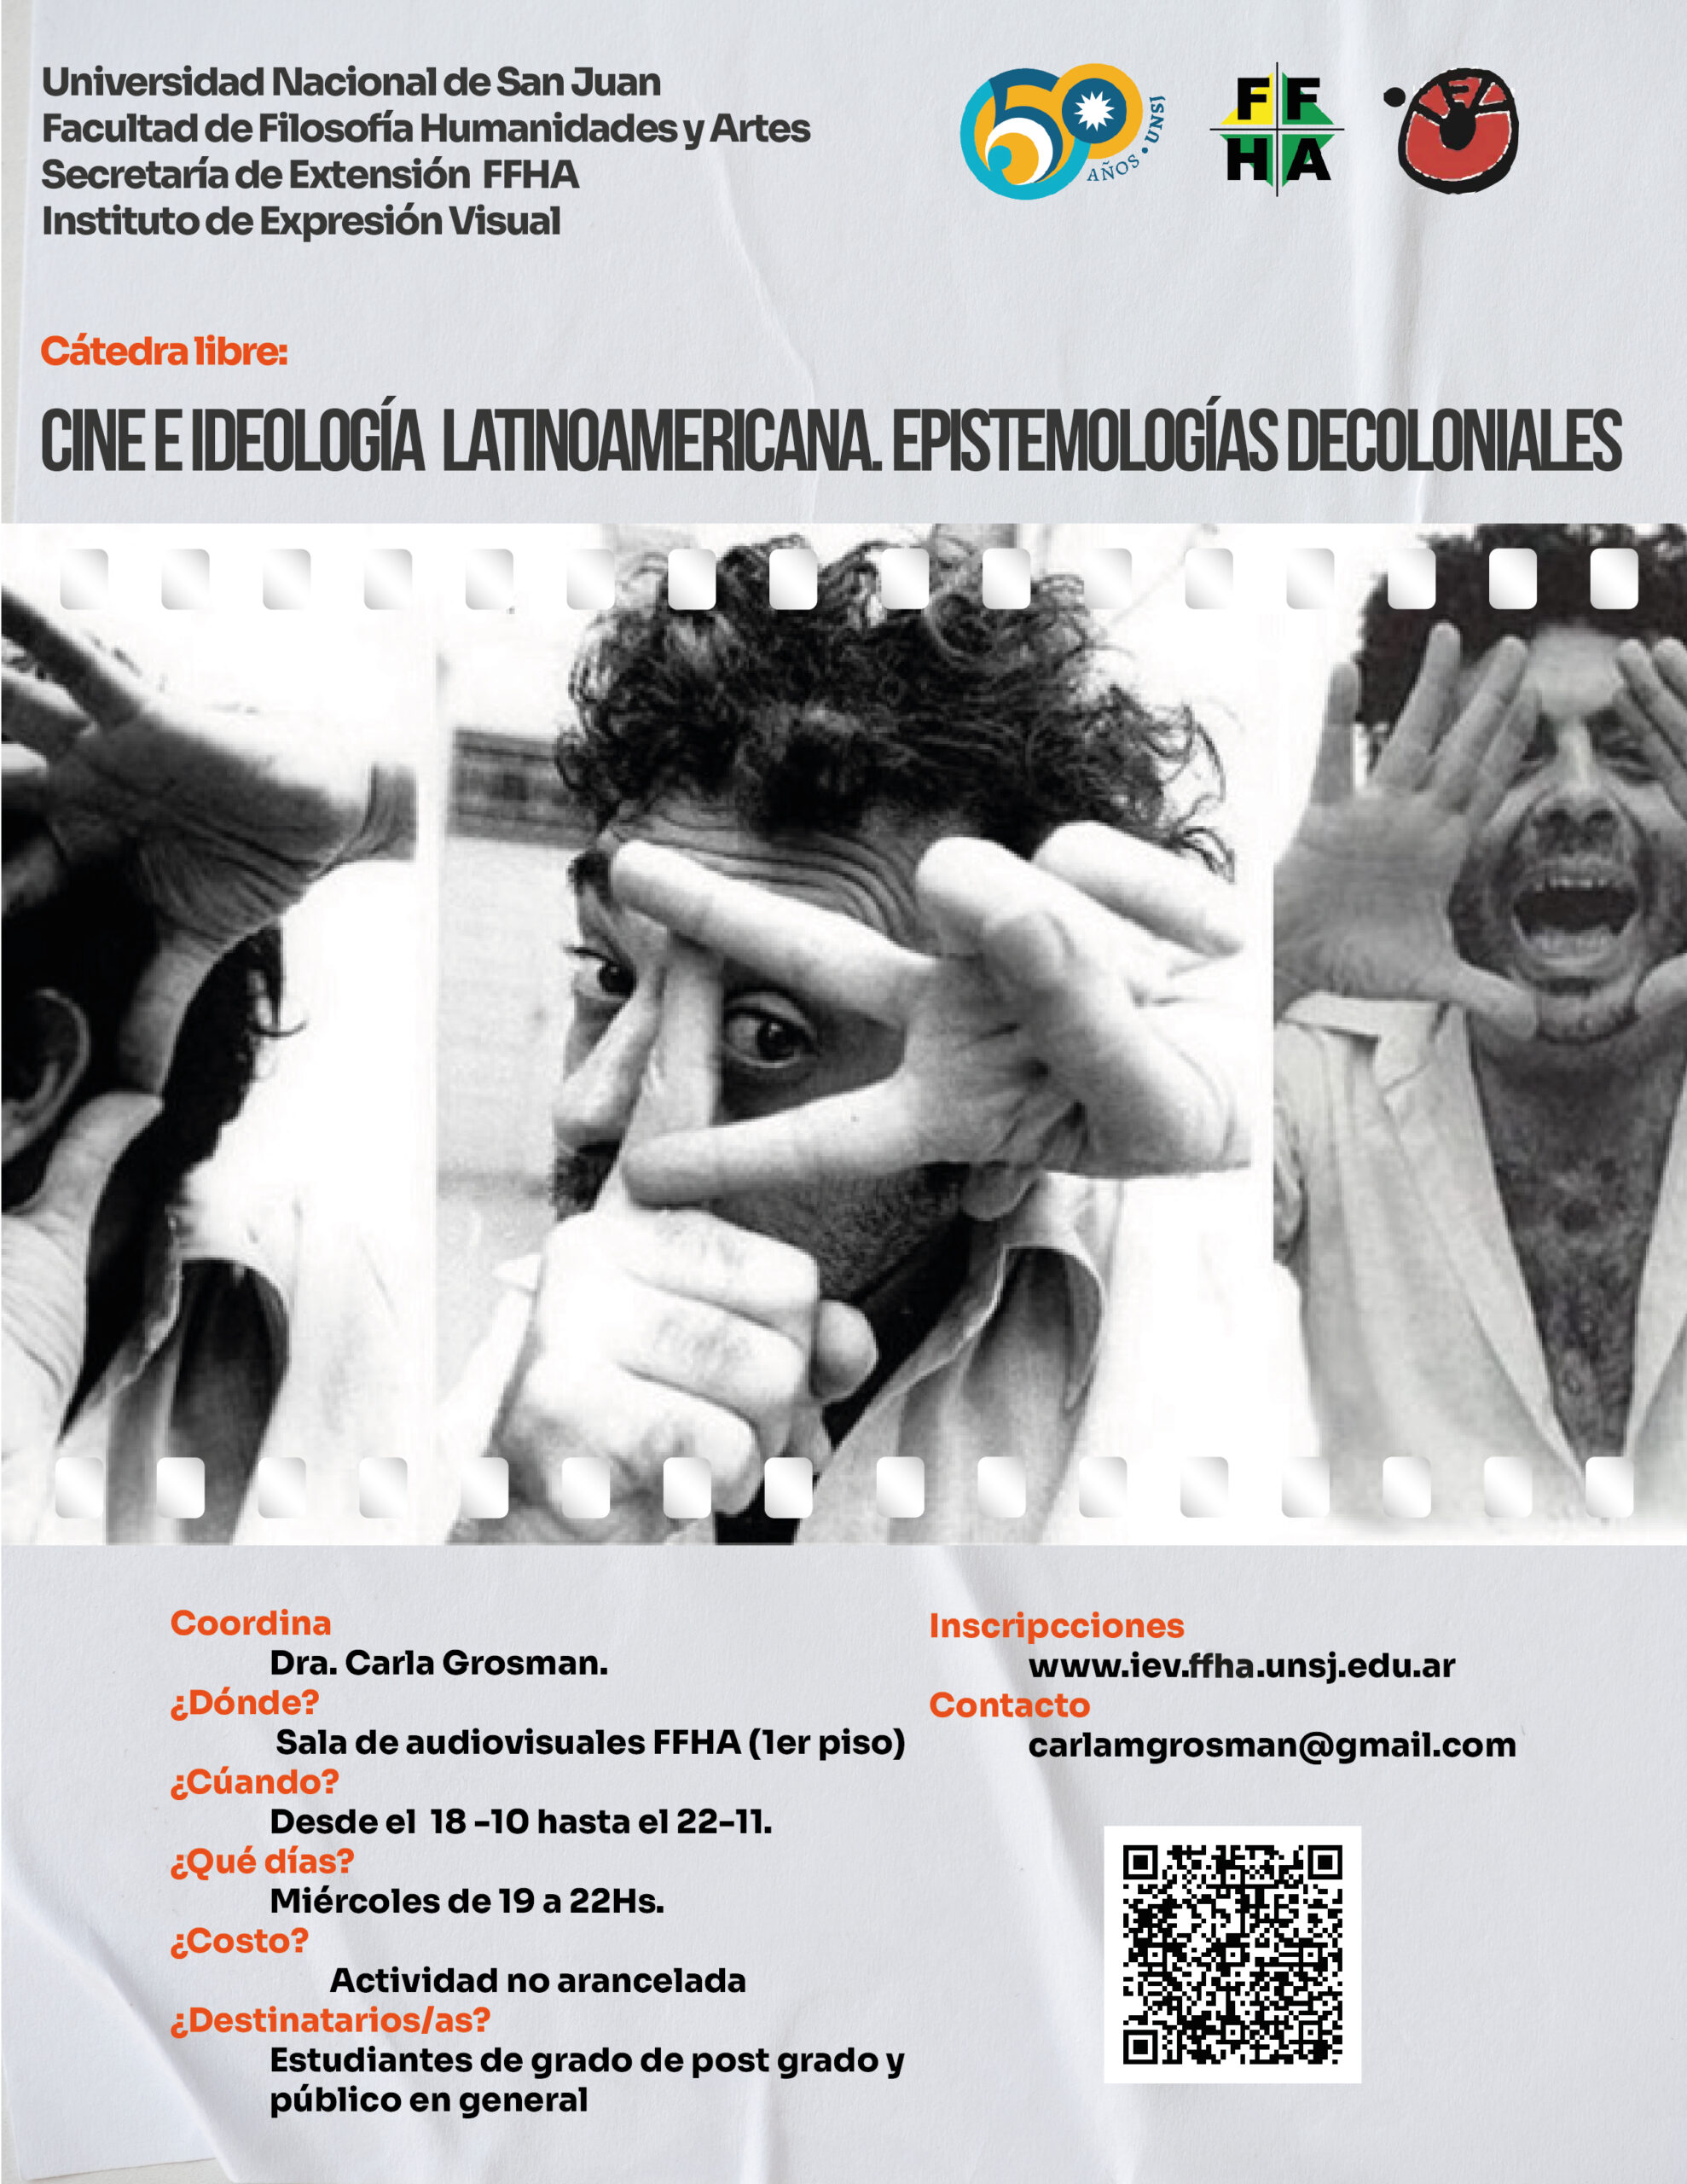 Cátedra libre “Cine e ideología Latinoamericana: Epistemologías decoloniales”